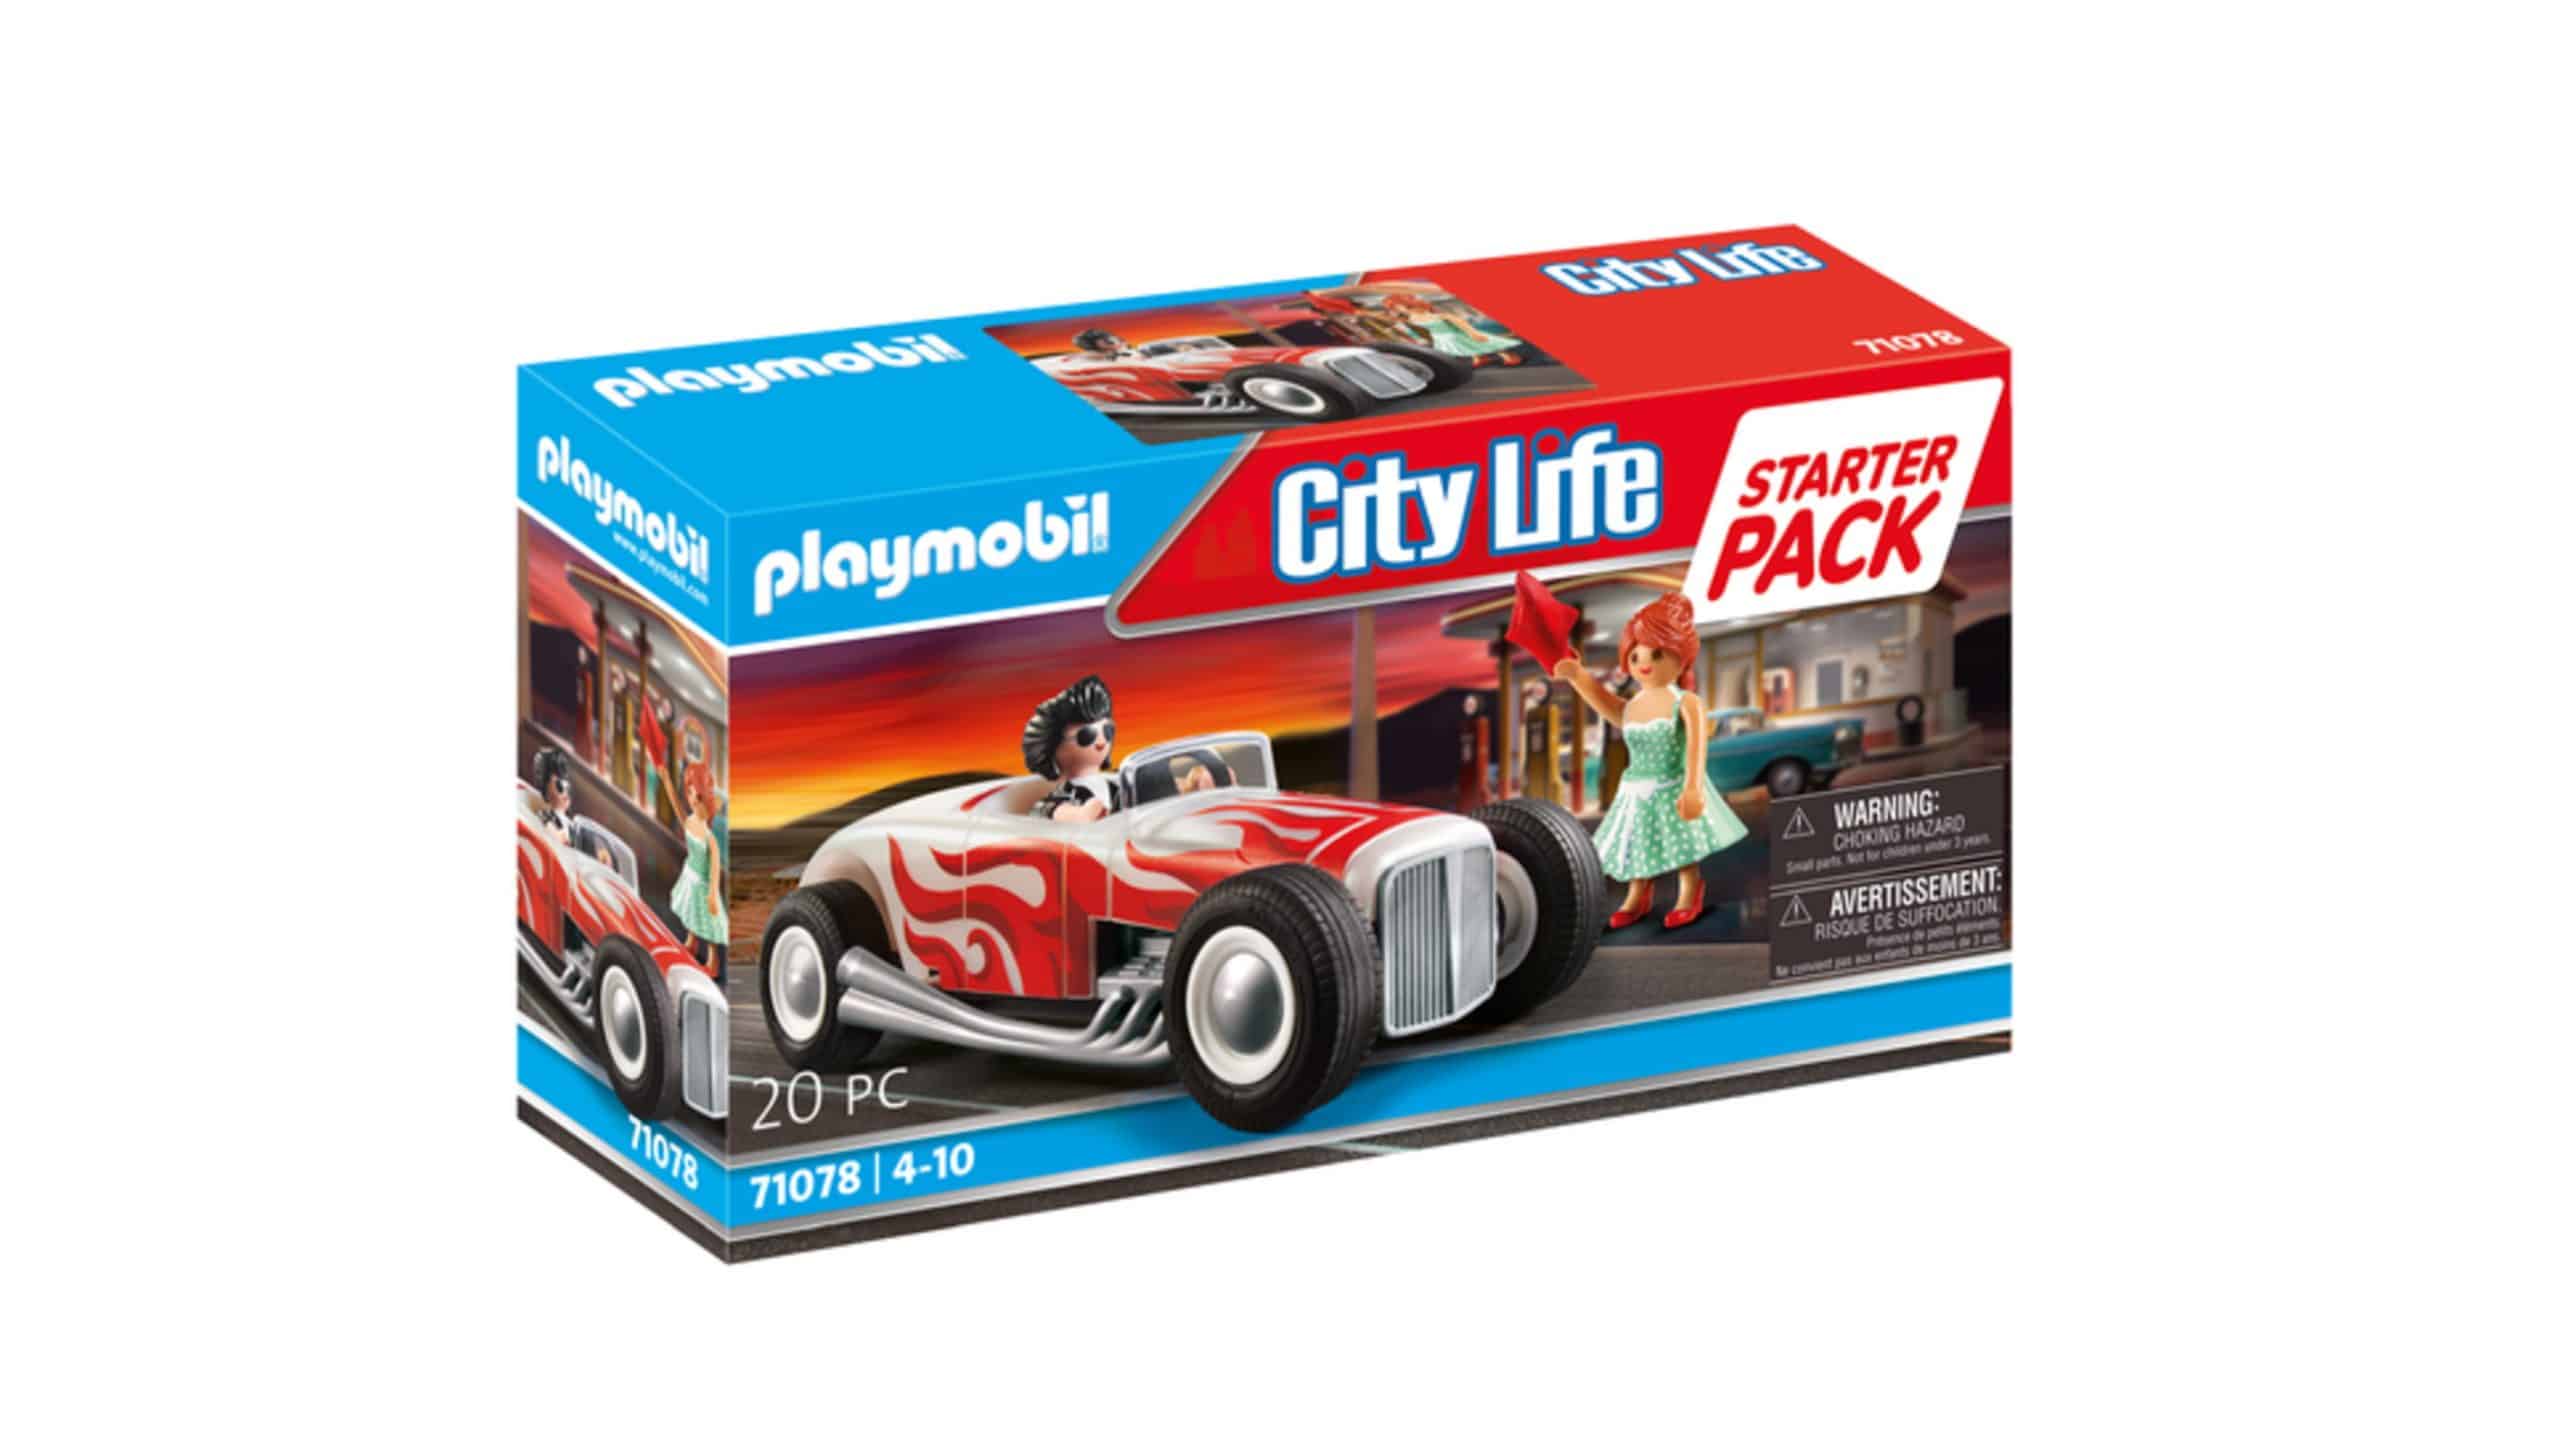 Playmobil - Ζευγάρι Με Vintage Αυτοκίνητο